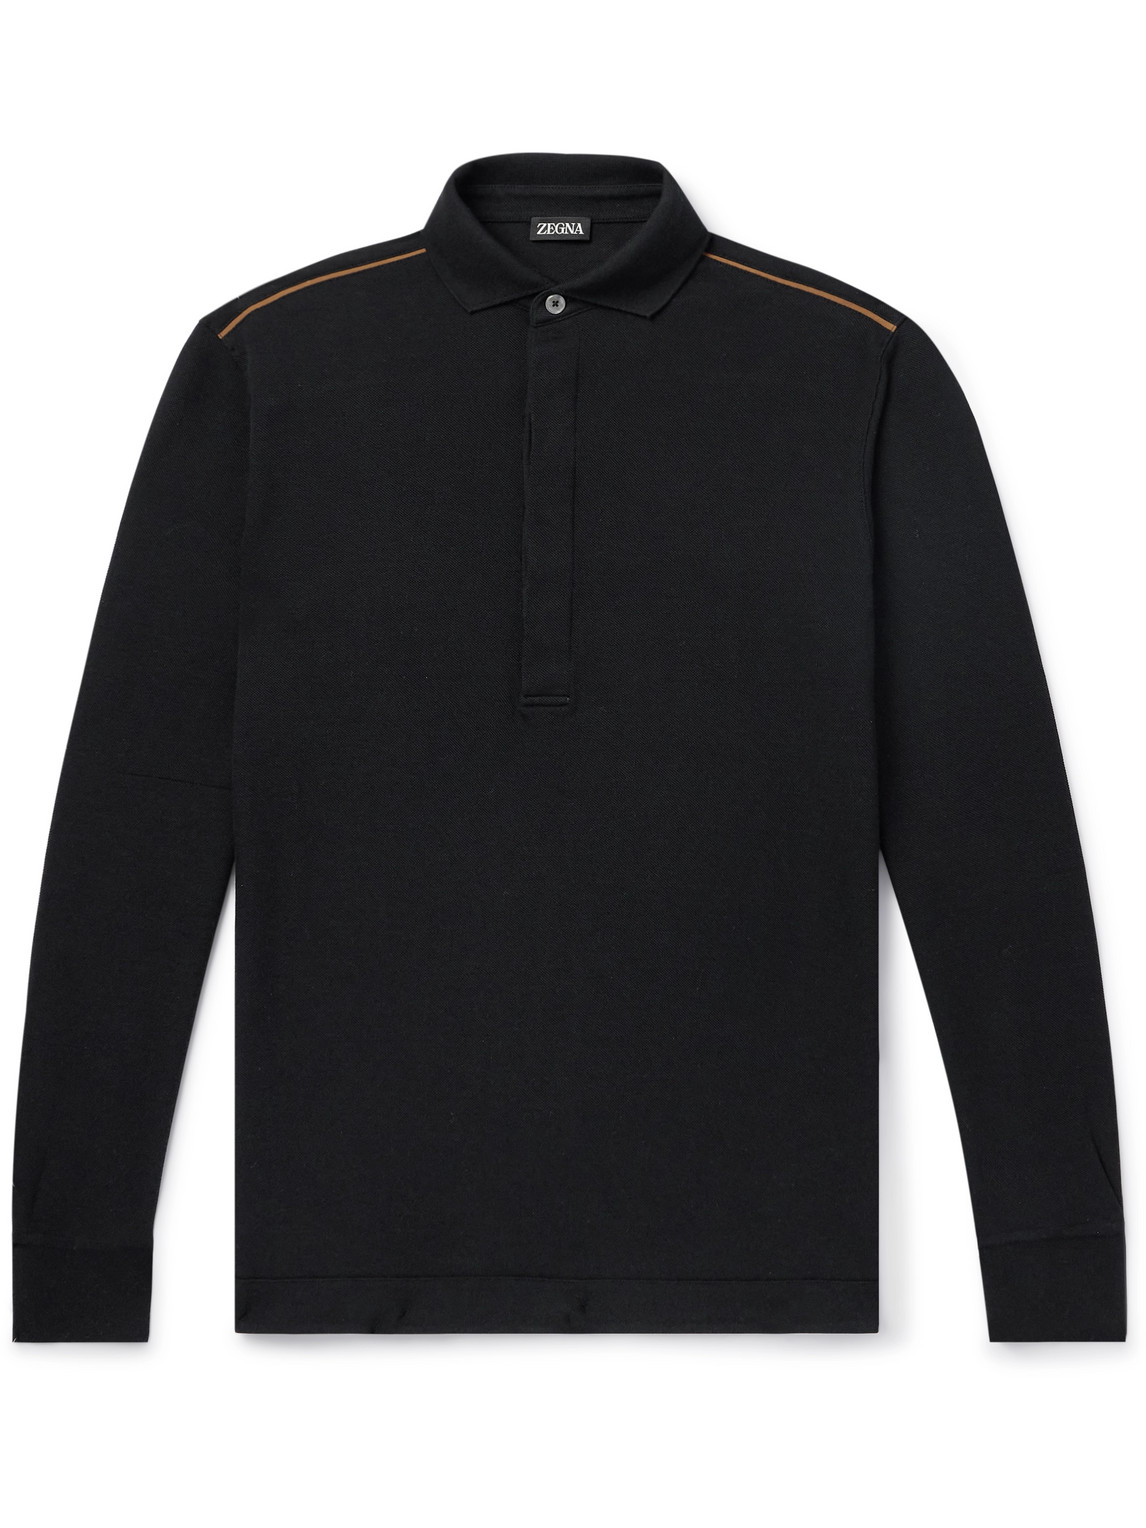 Zegna - Leather-Trimmed Cotton-Piqué Polo Shirt - Men - Black - IT 48 von Zegna